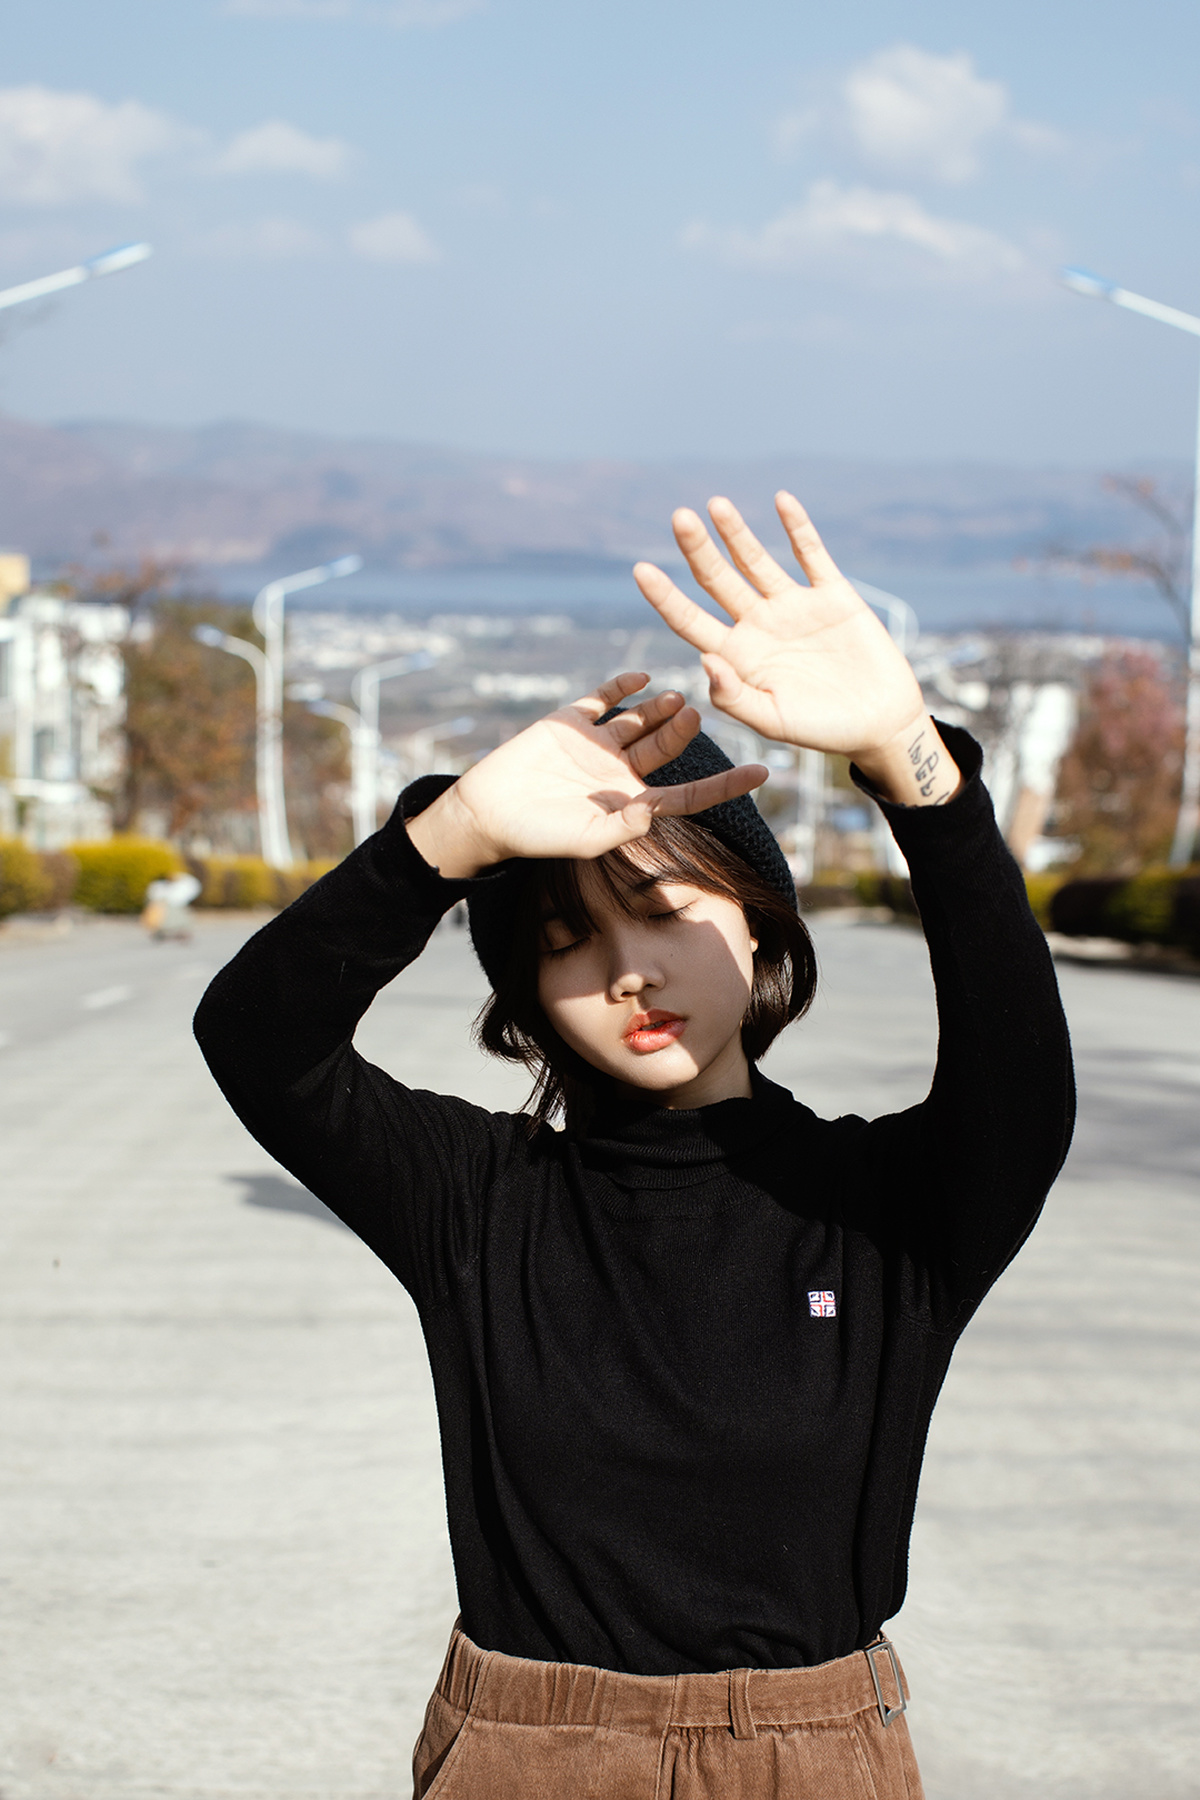 在停车场前 一个穿黑色衣服的年轻女子举起双手挡住眼睛前的交通标志。